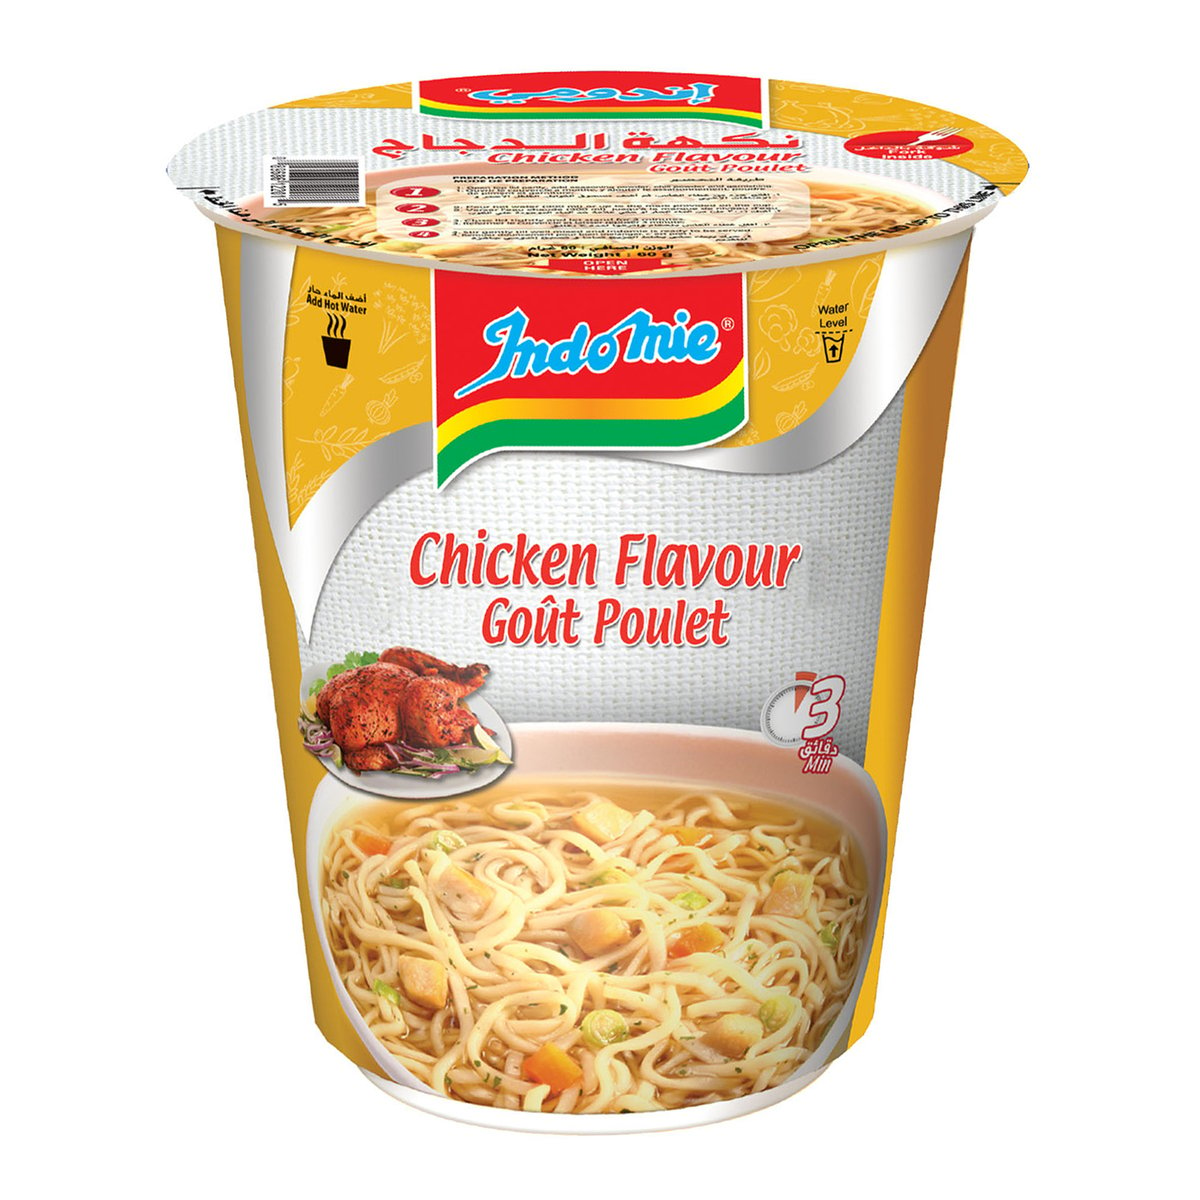 اشتري قم بشراء أندومي نودلز بنكهة الدجاج كوب 55 جم Online at Best Price من الموقع - من لولو هايبر ماركت Cup Noodle في السعودية